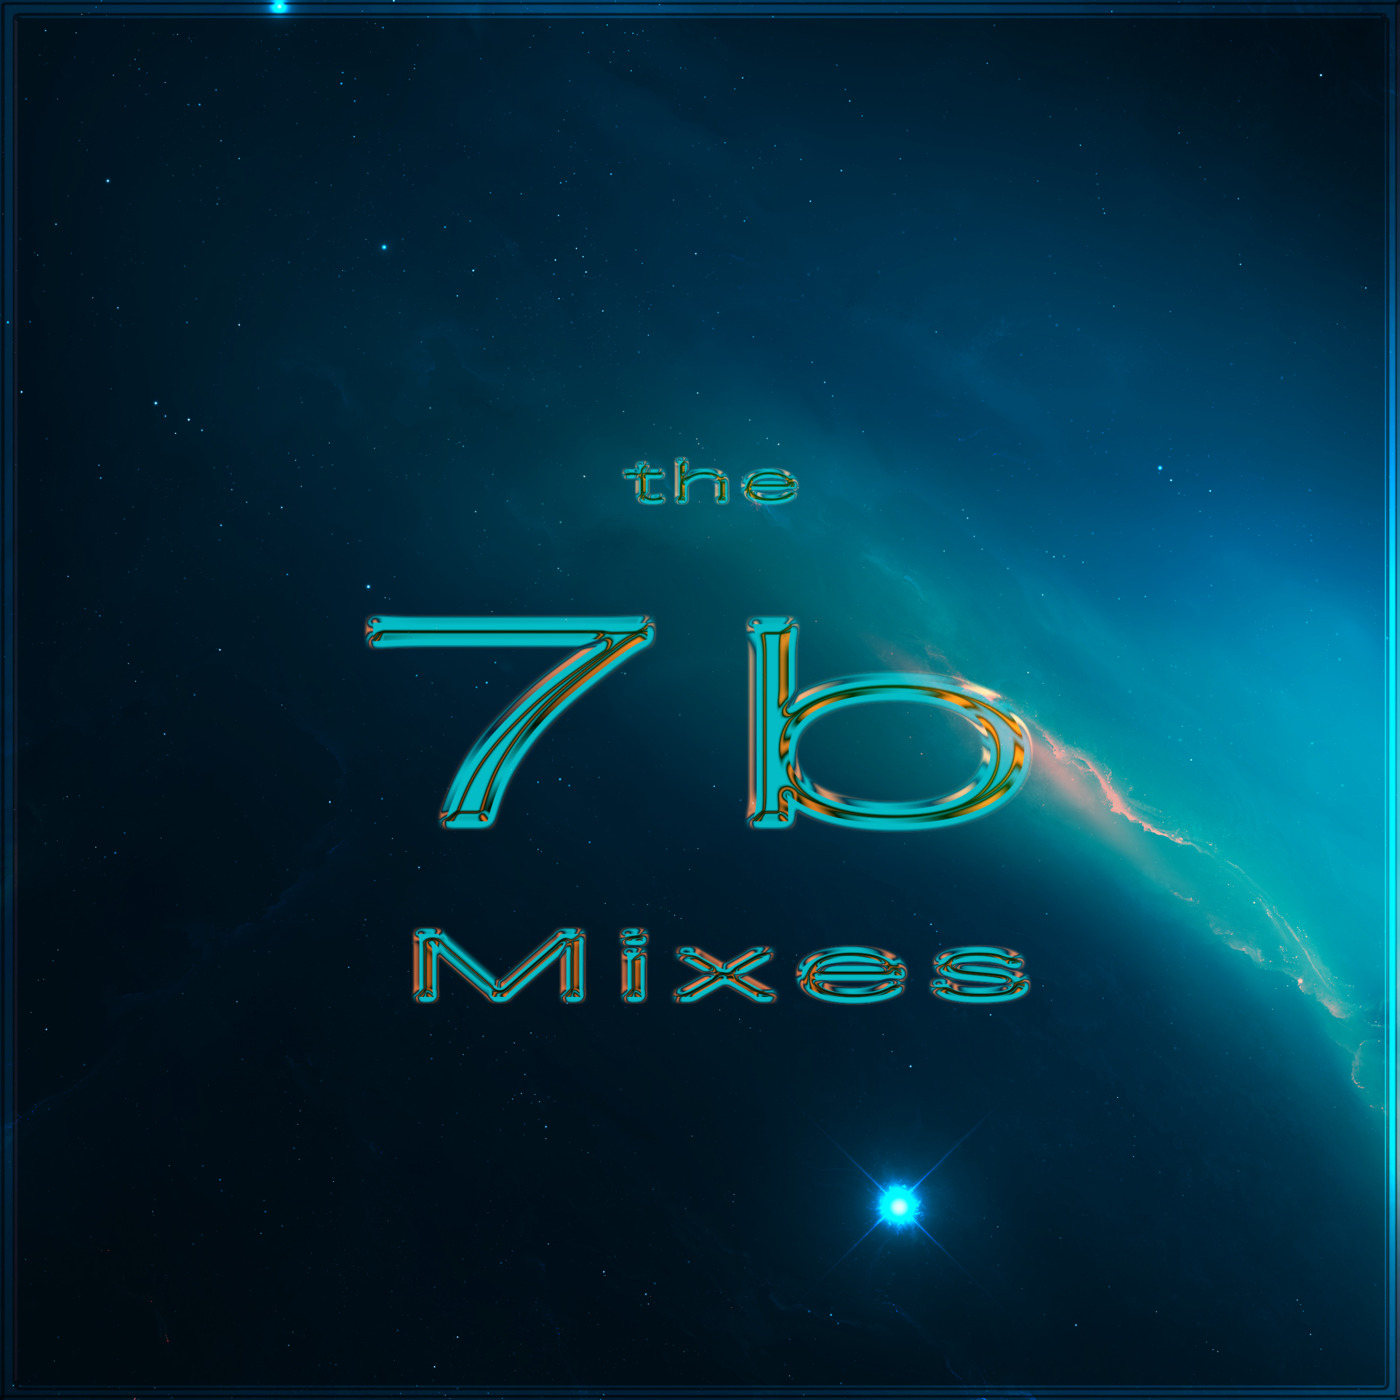 The 7b Mixes